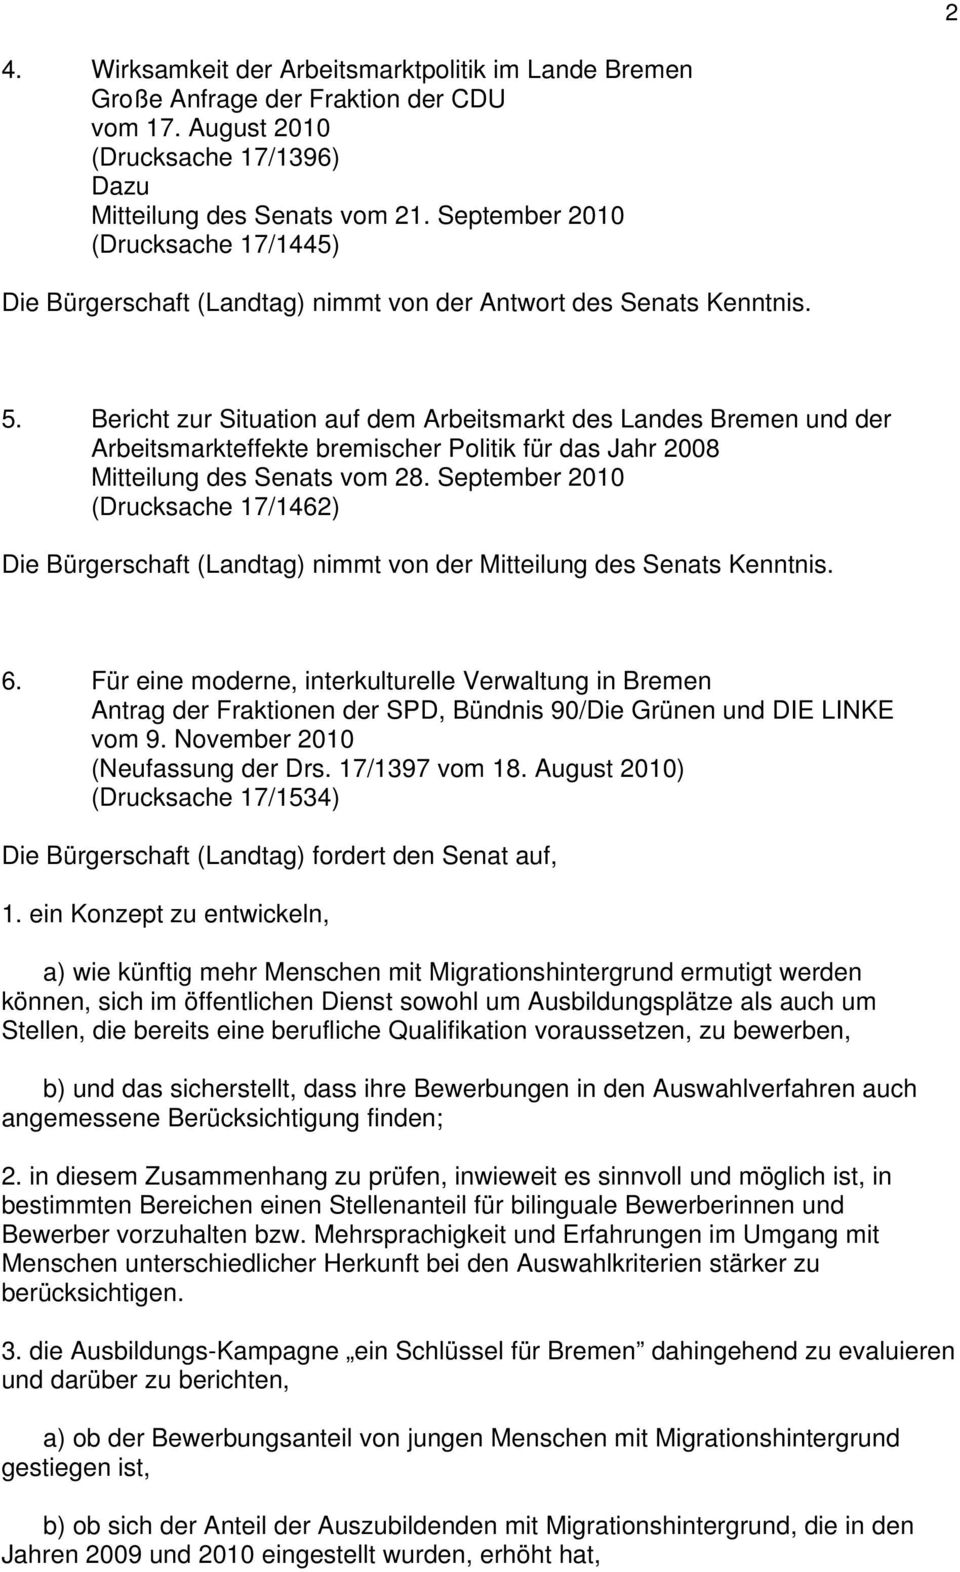 Bericht zur Situation auf dem Arbeitsmarkt des Landes Bremen und der Arbeitsmarkteffekte bremischer Politik für das Jahr 2008 Mitteilung des Senats vom 28.